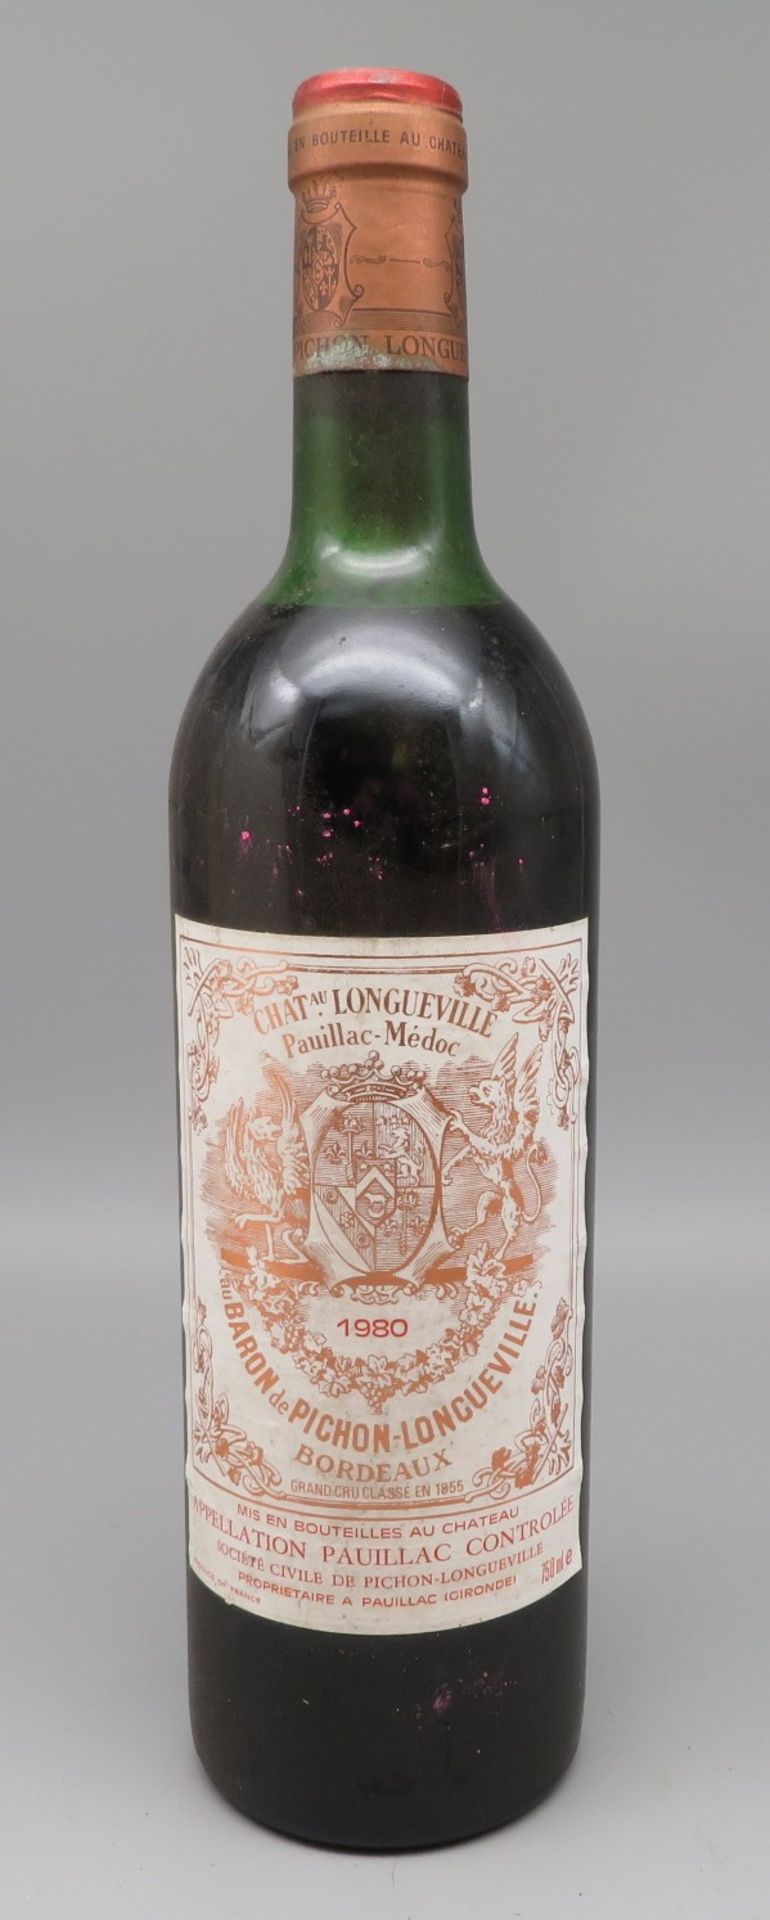 2 Flaschen, Frankreich, Bordeaux, Chateau Longueville Pauillac-Medoc au Baron de Pichon, 1988.